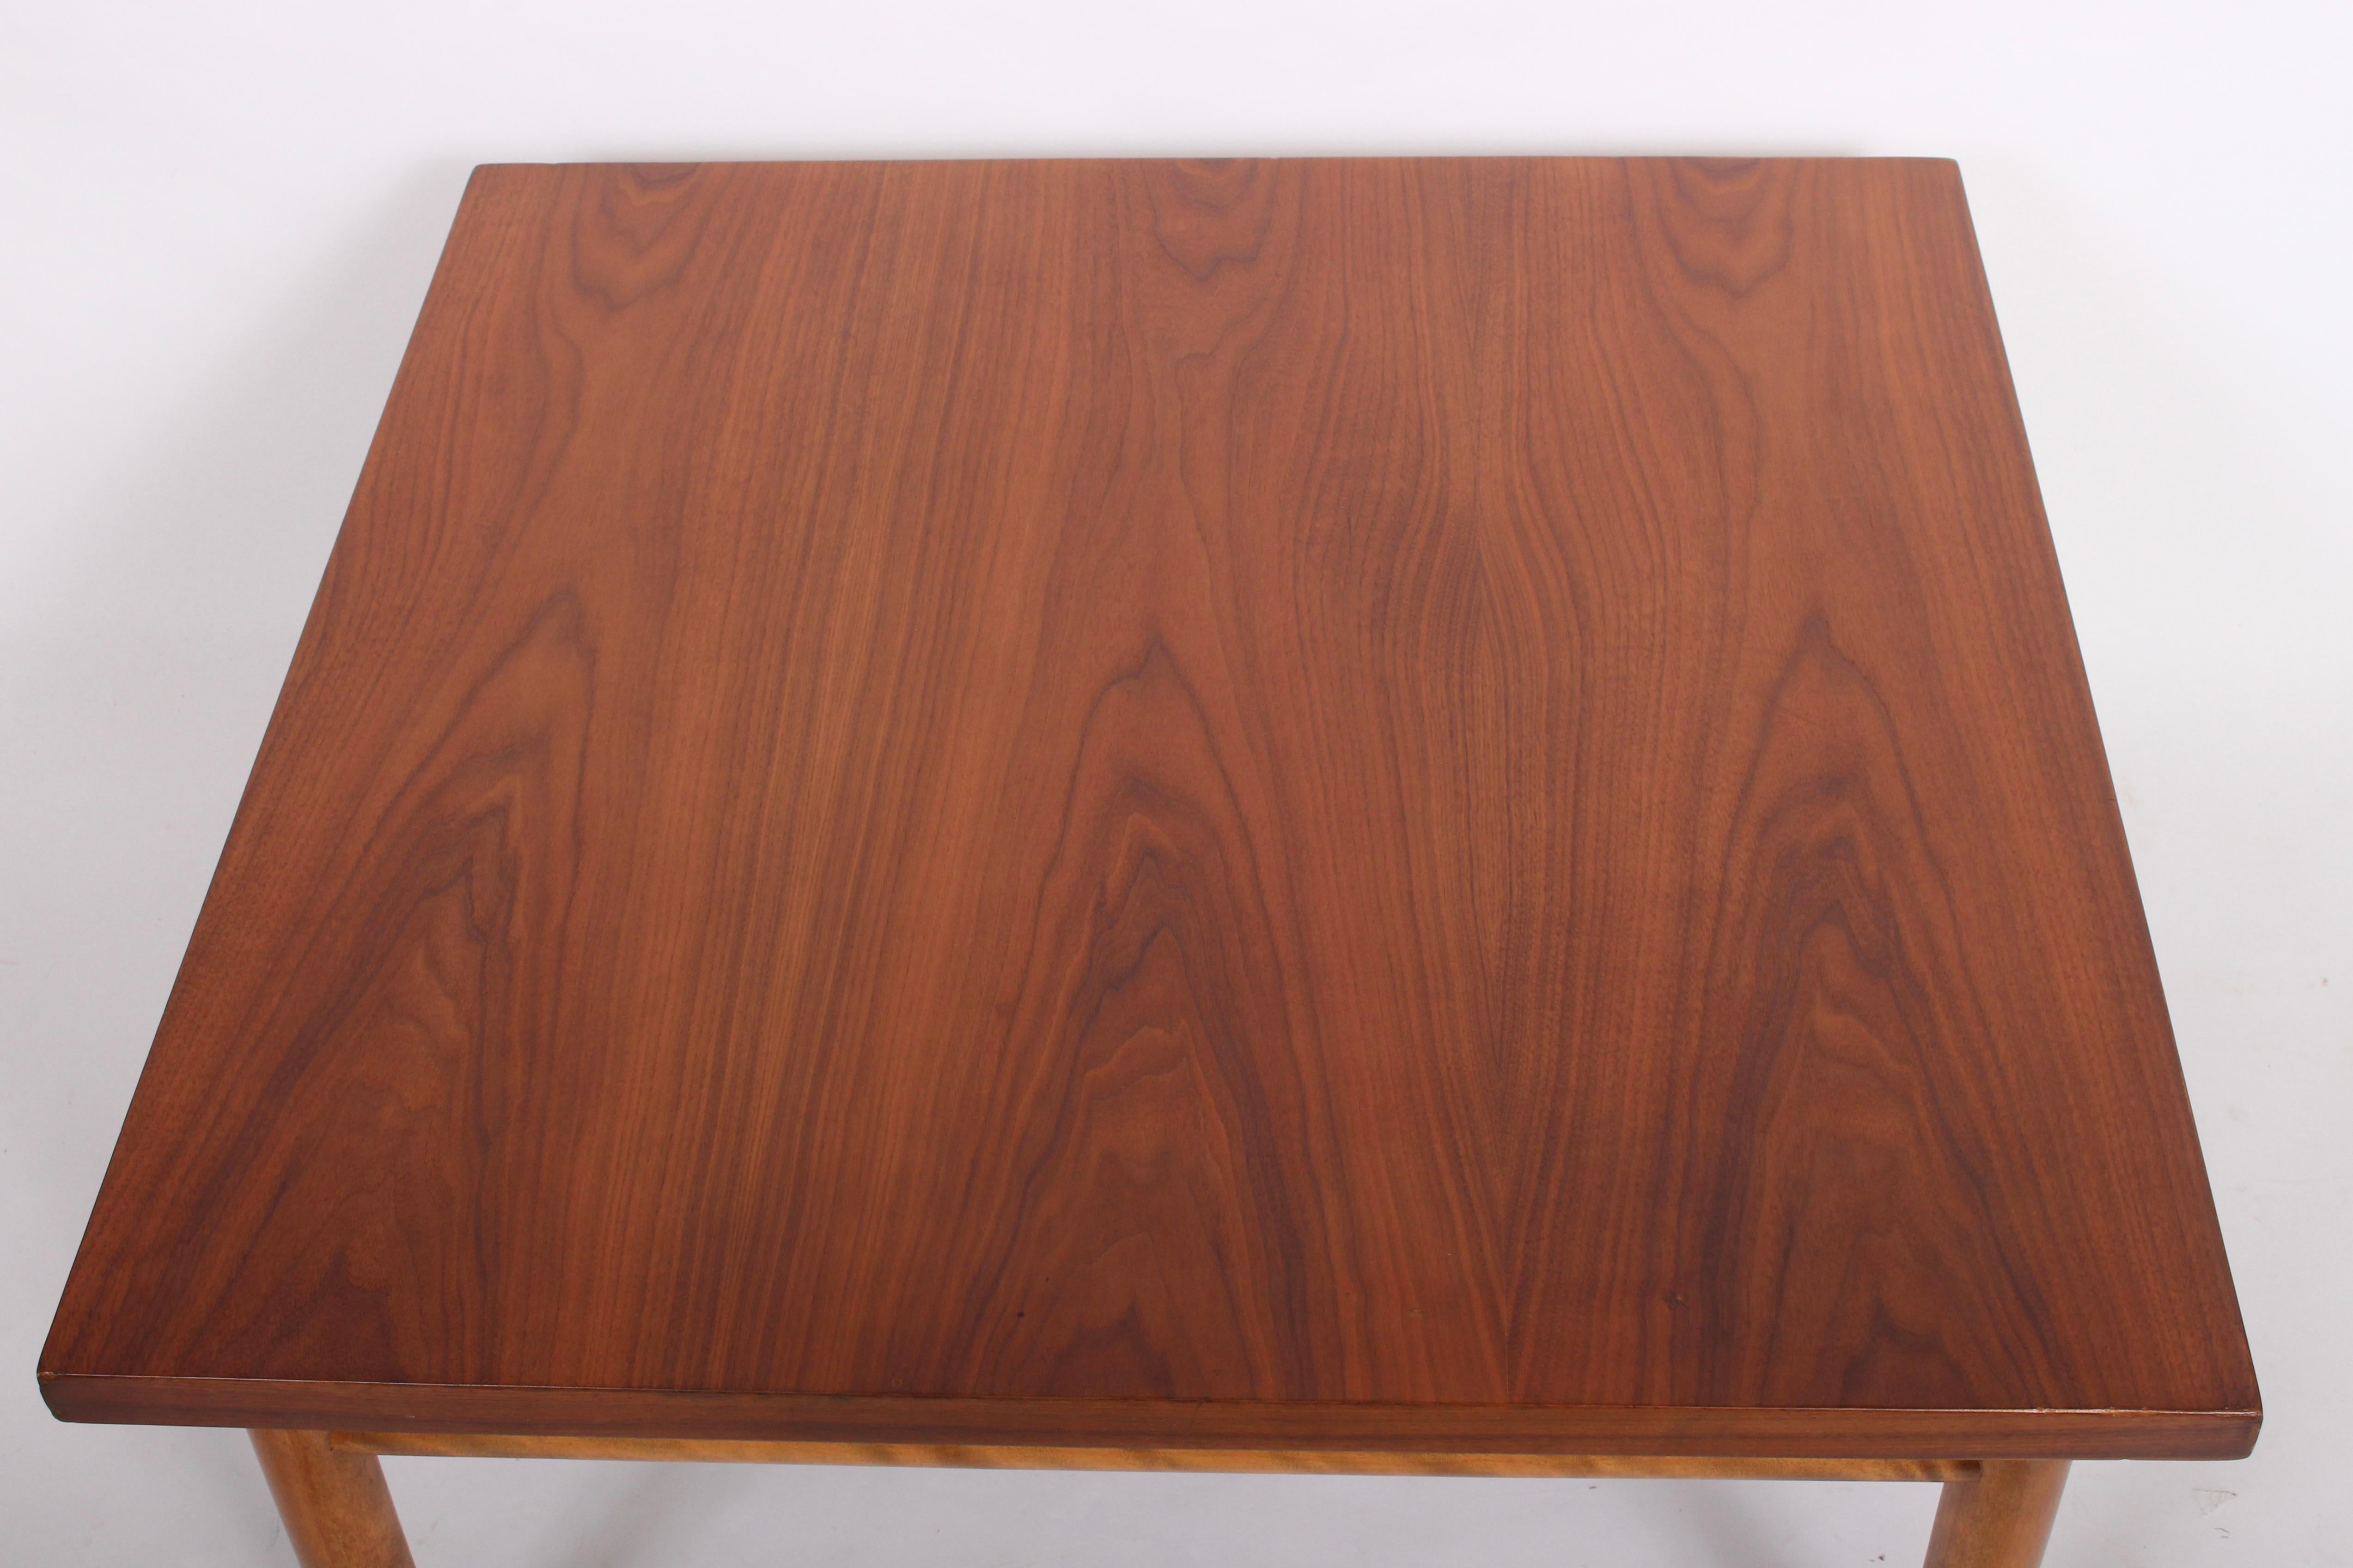 T. H. Robsjohn Gibbings pour Widdicomb table basse carrée en acajou. Table d'appoint. Circa 1960. La surface est en bois massif, le placage en acajou est magnifiquement grainé et le cadre et les pieds sont en acajou massif tourné. Récemment rénové. 